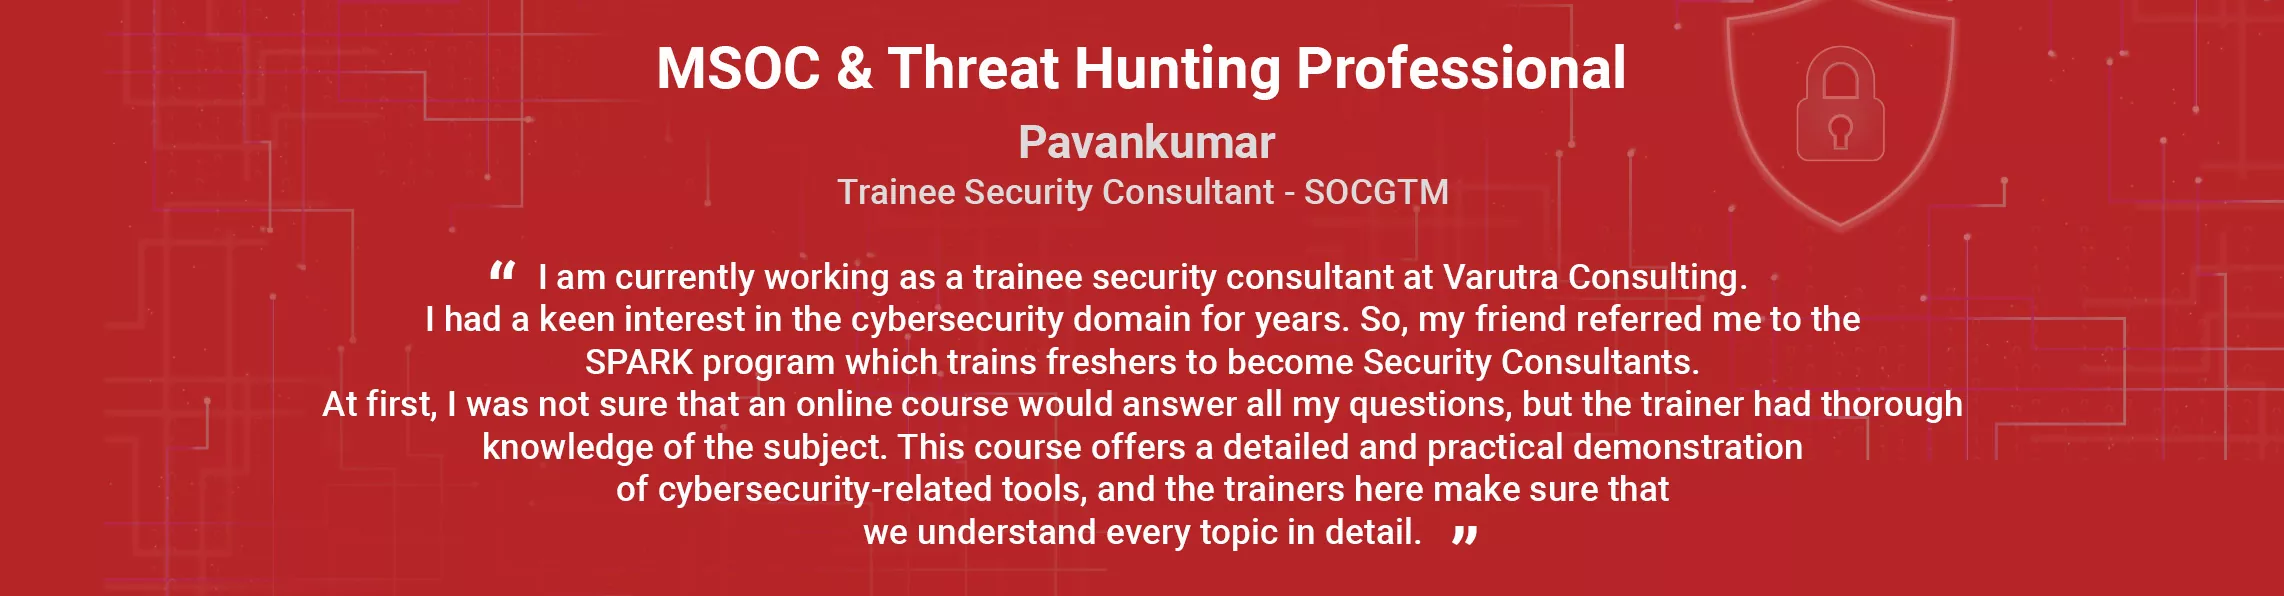 Cyber Security Training Cyber Security Training